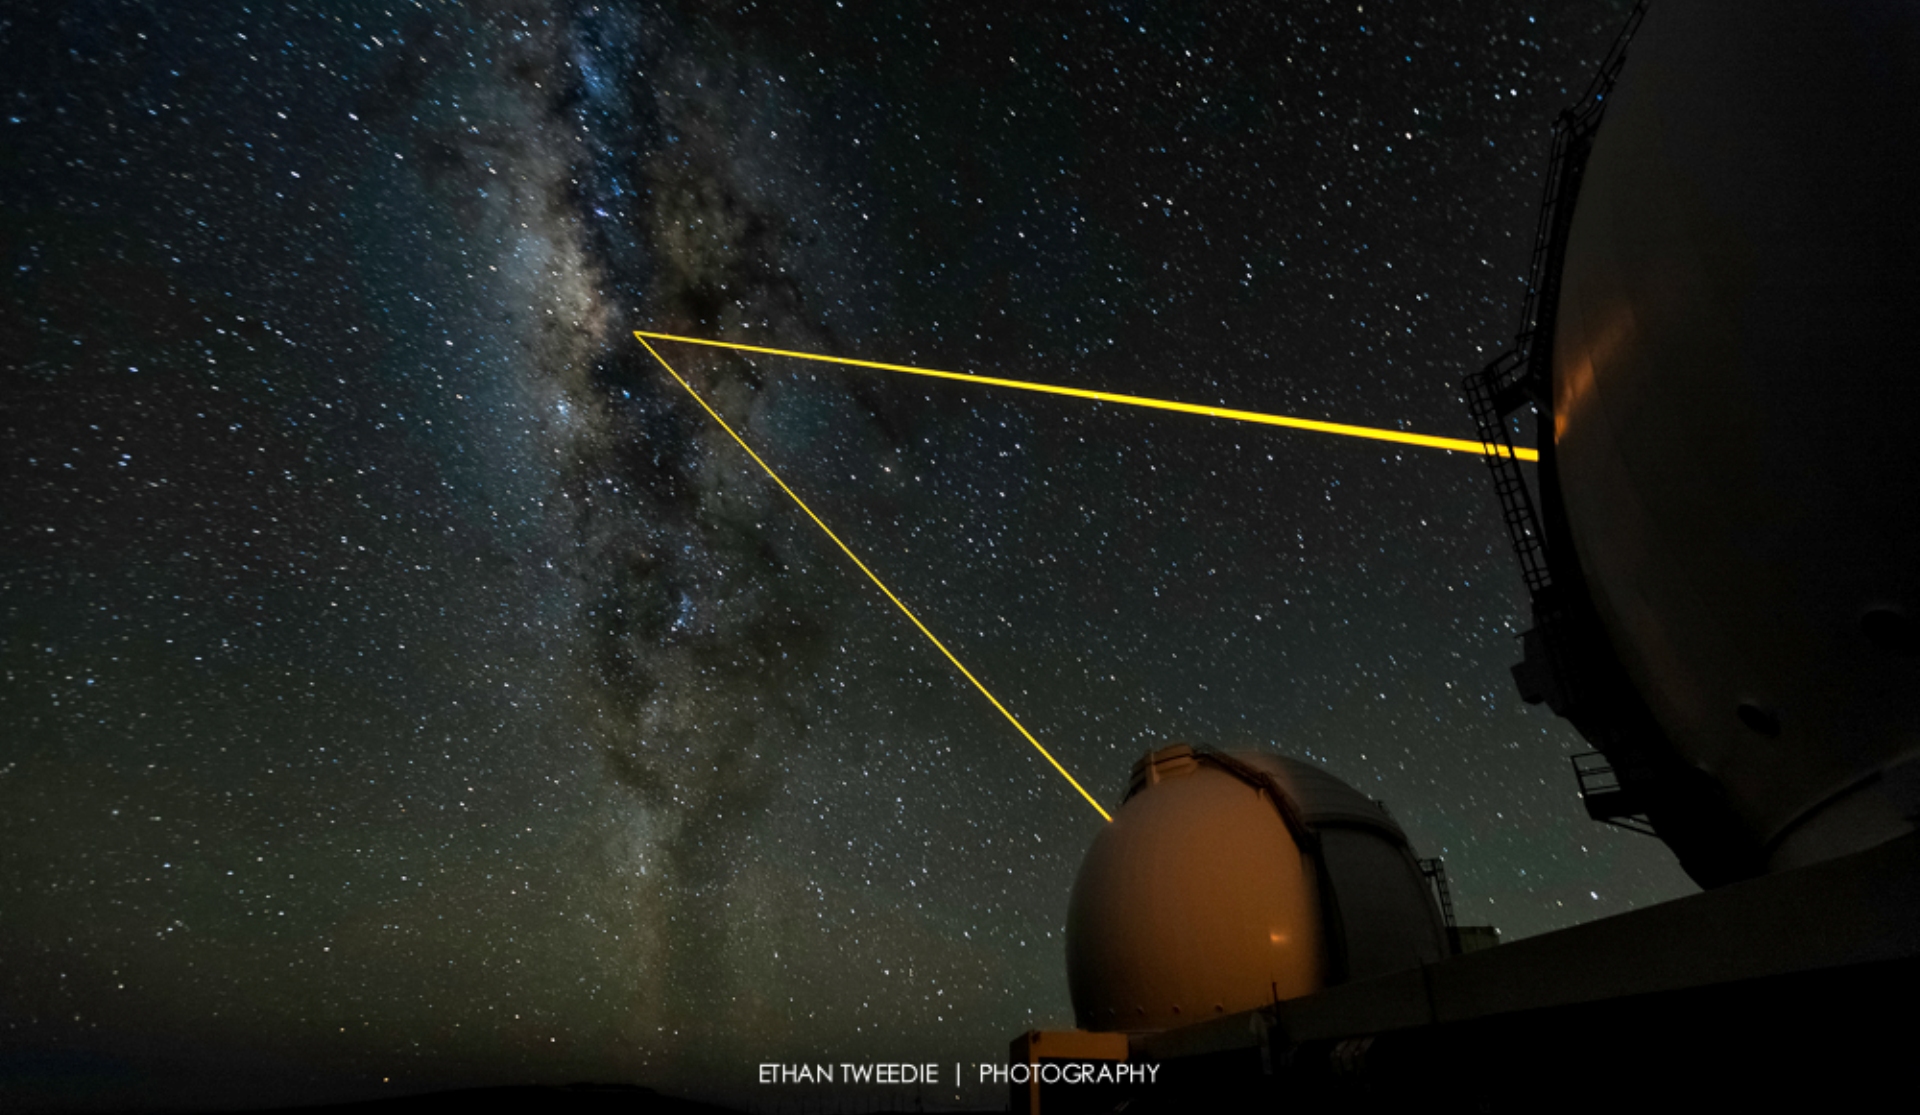 Pour observer le centre de la Voie lactée avec des instruments à optique adaptative, on utilise des faisceaux laser pour sonder l'état de turbulence de l'atmosphère au-dessus des télescopes du Keck. © Ethan Tweedy Photography